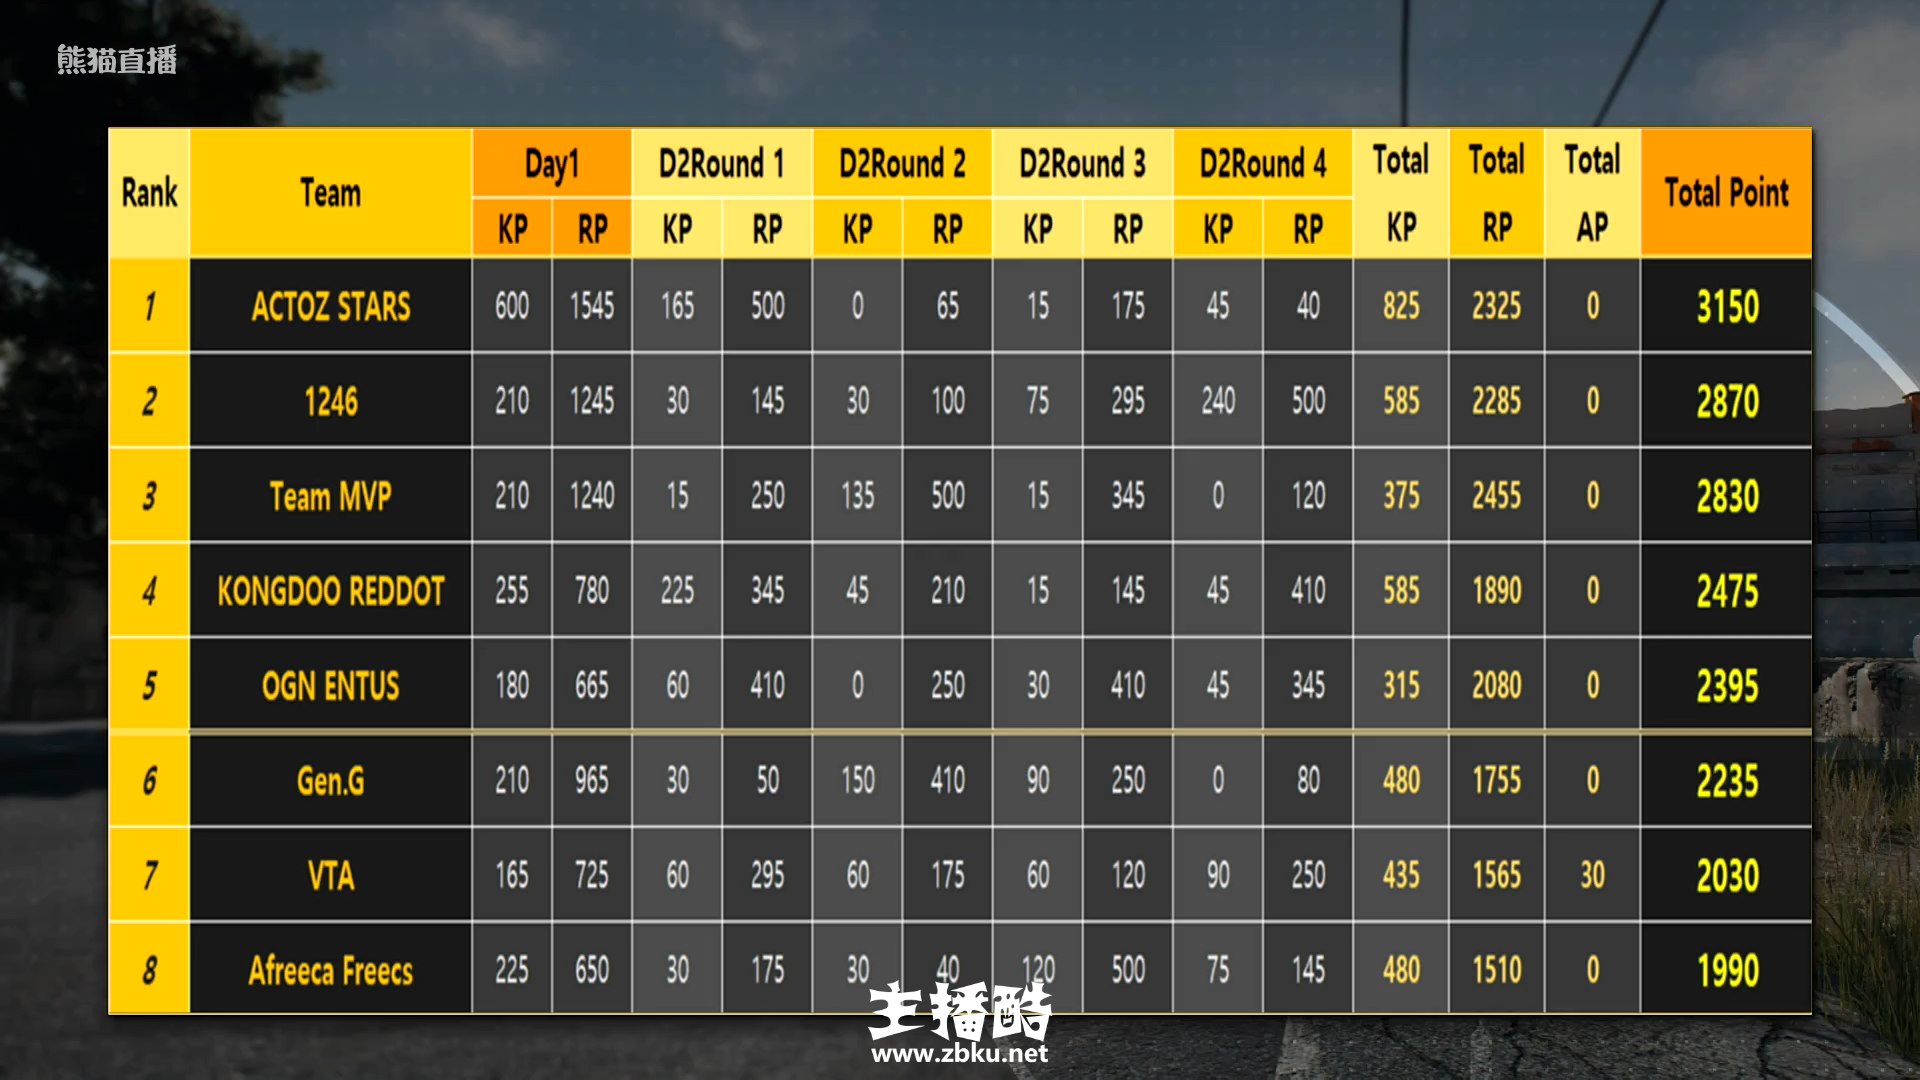 中韩对抗赛FPP积分汇总：ACTOZ获得双冠，1246拿下亚军